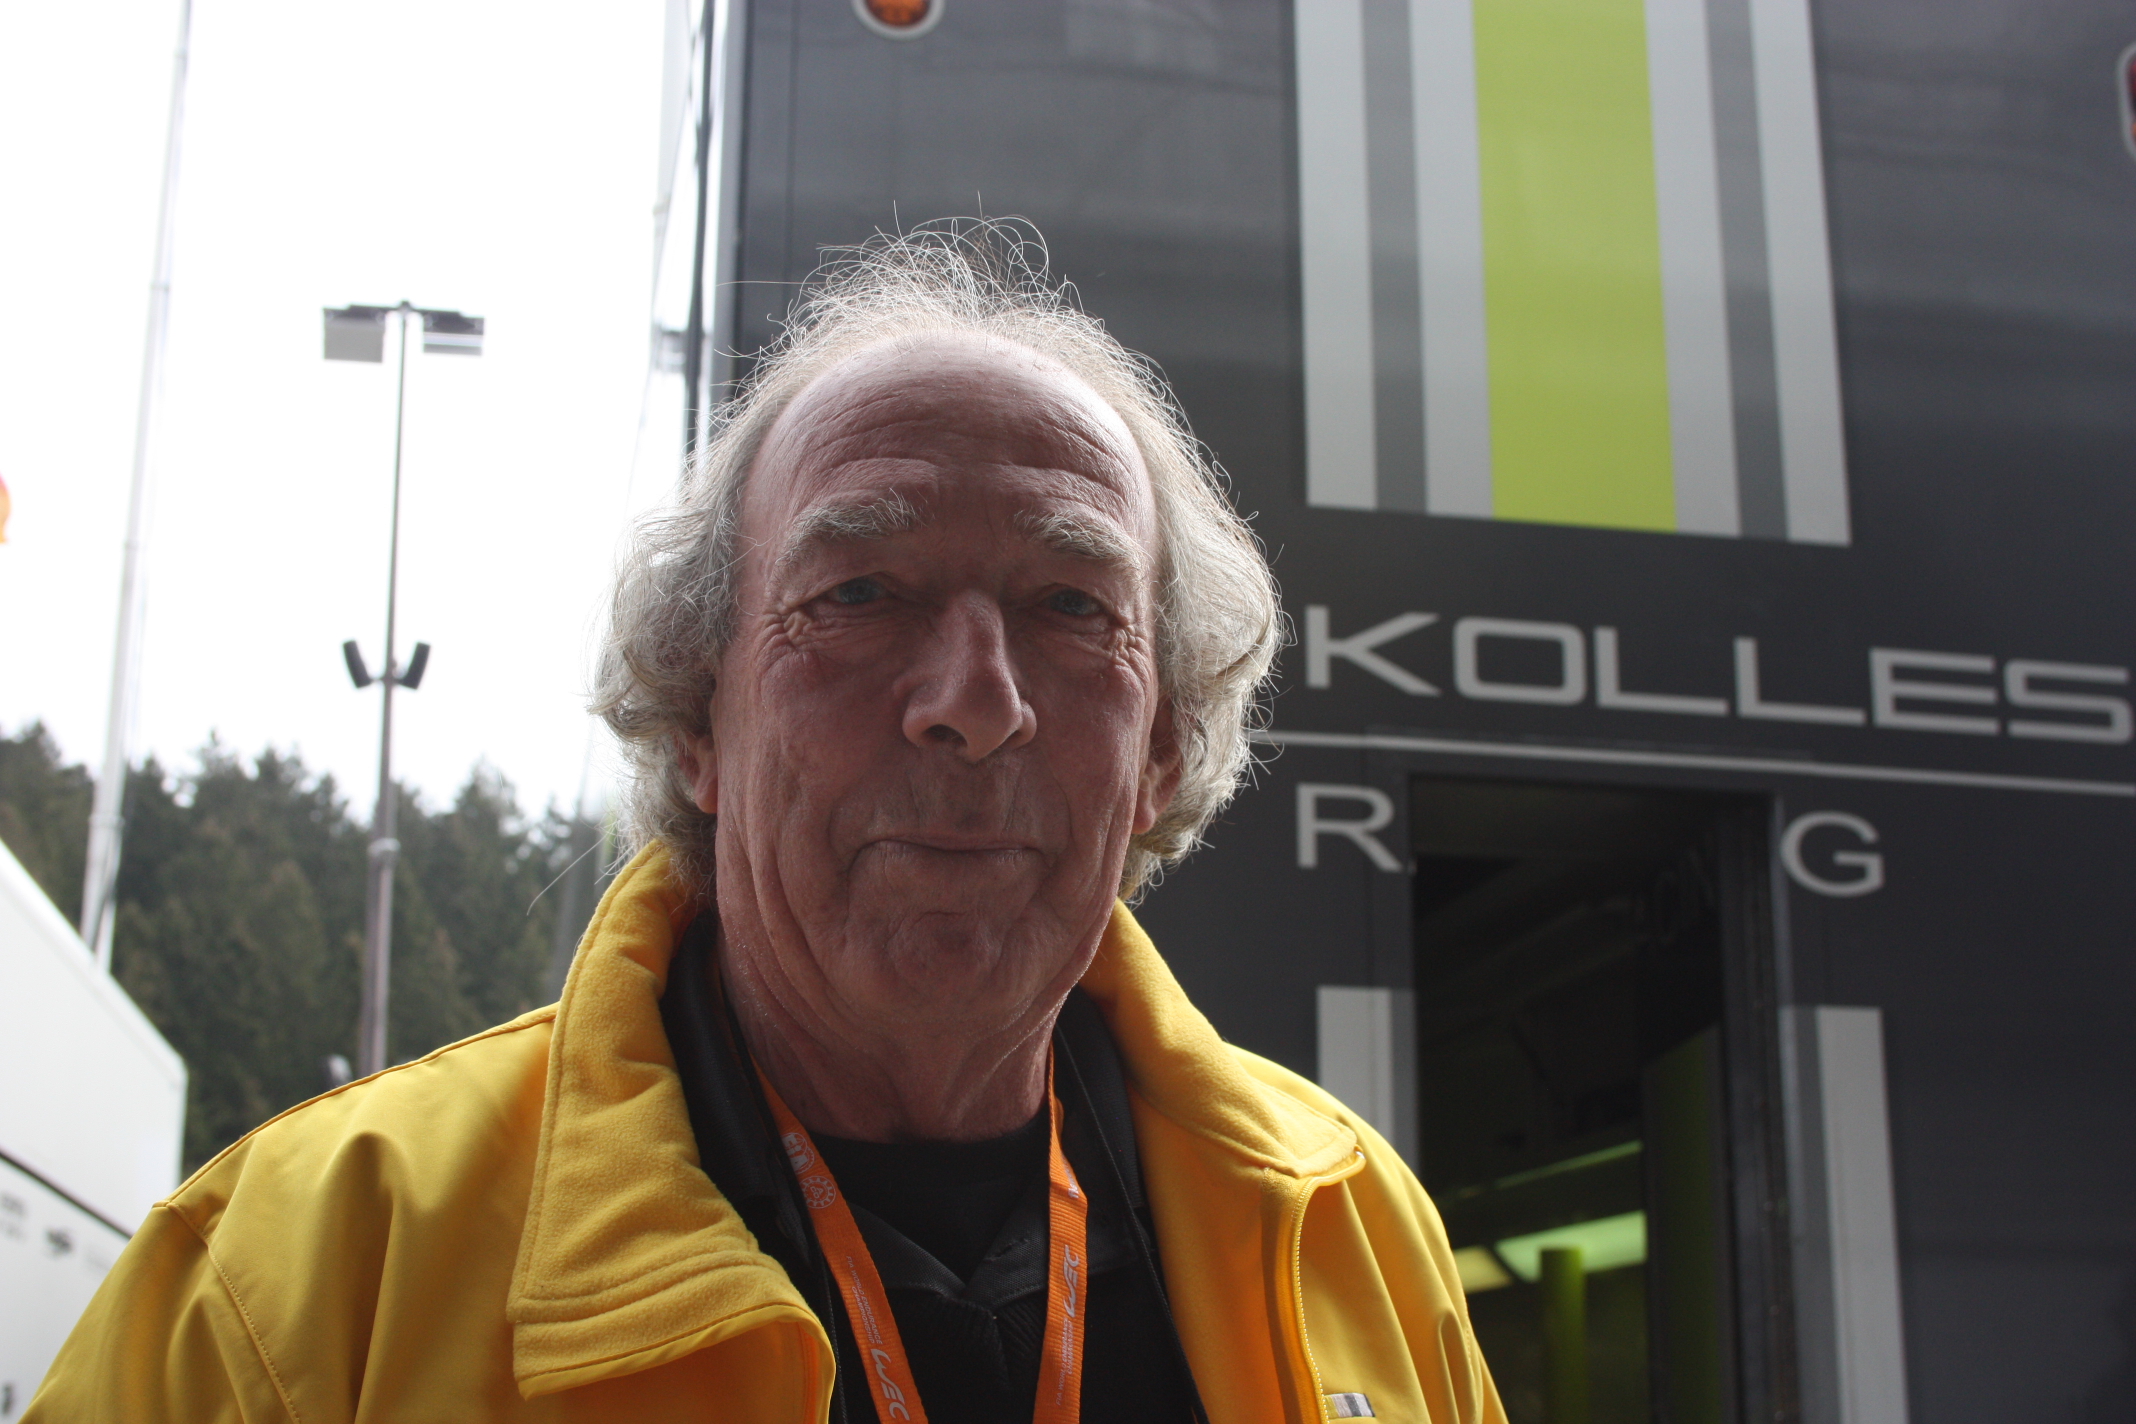 Manažerem týmu Dr. Colina Kollese není nikdo jiný, než Ian Phillips, dříve vedoucí stáje Jordan-F1